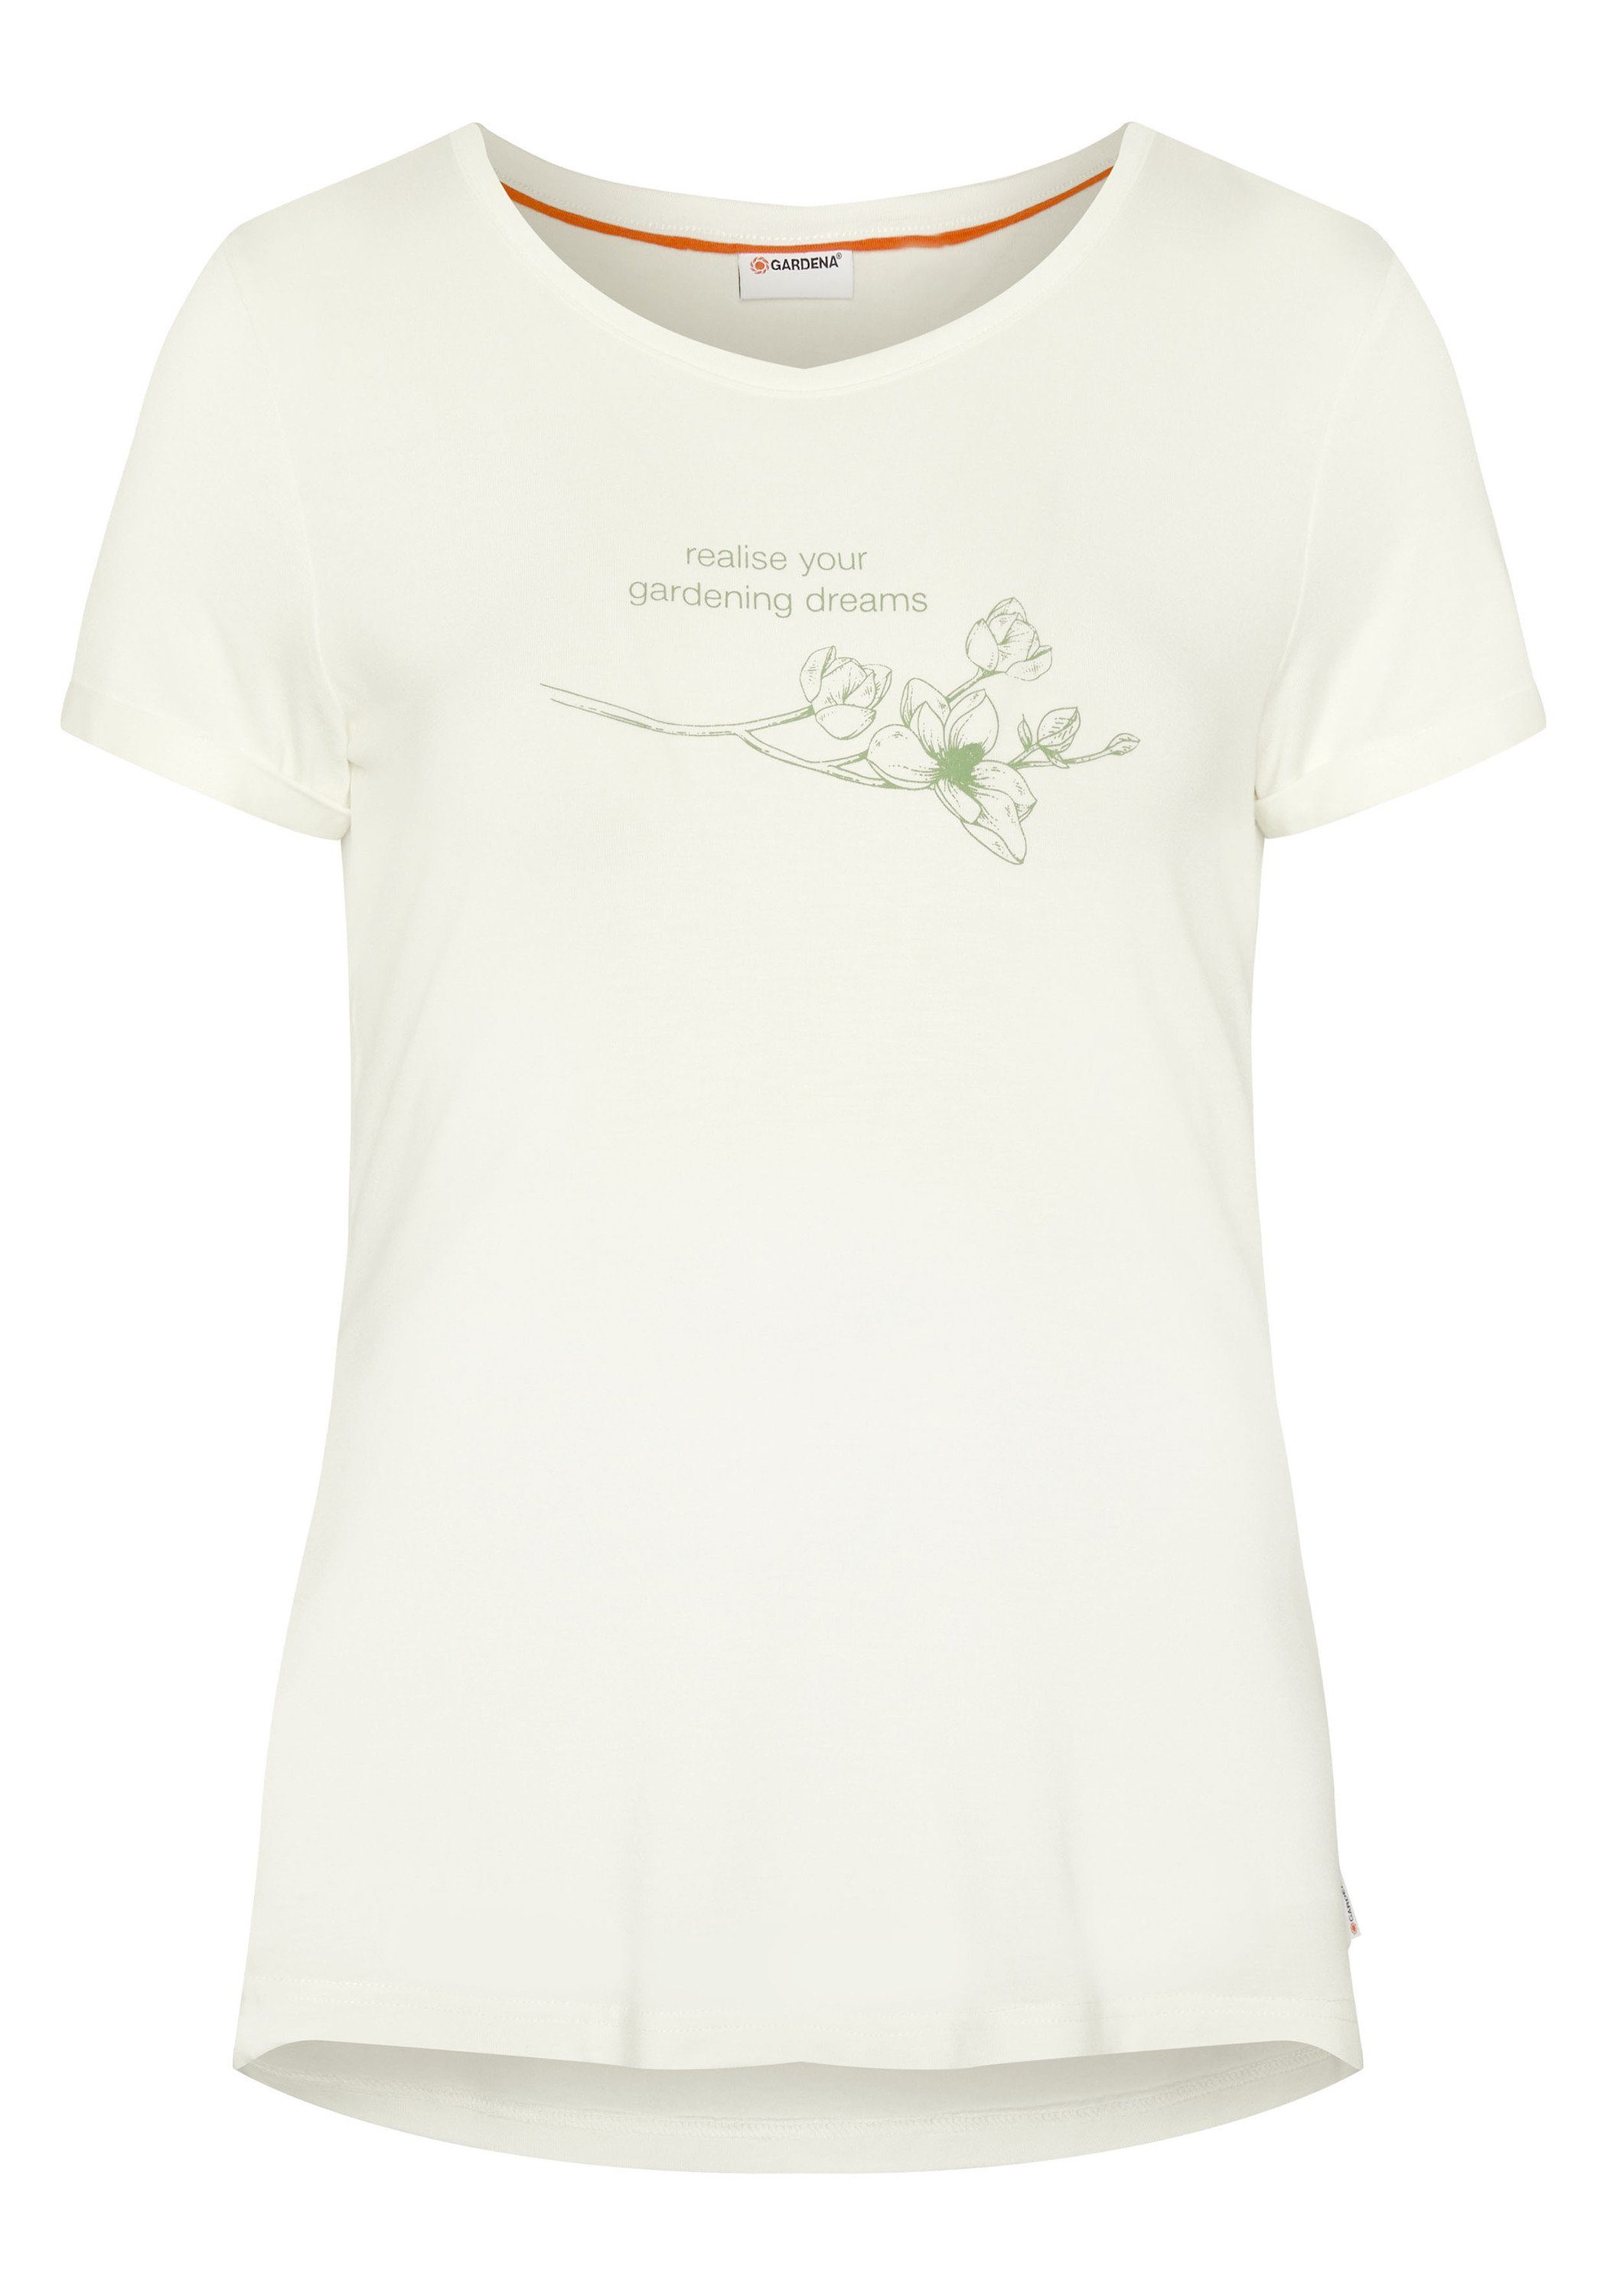 GARDENA Print-Shirt im floralen Gardening-Design